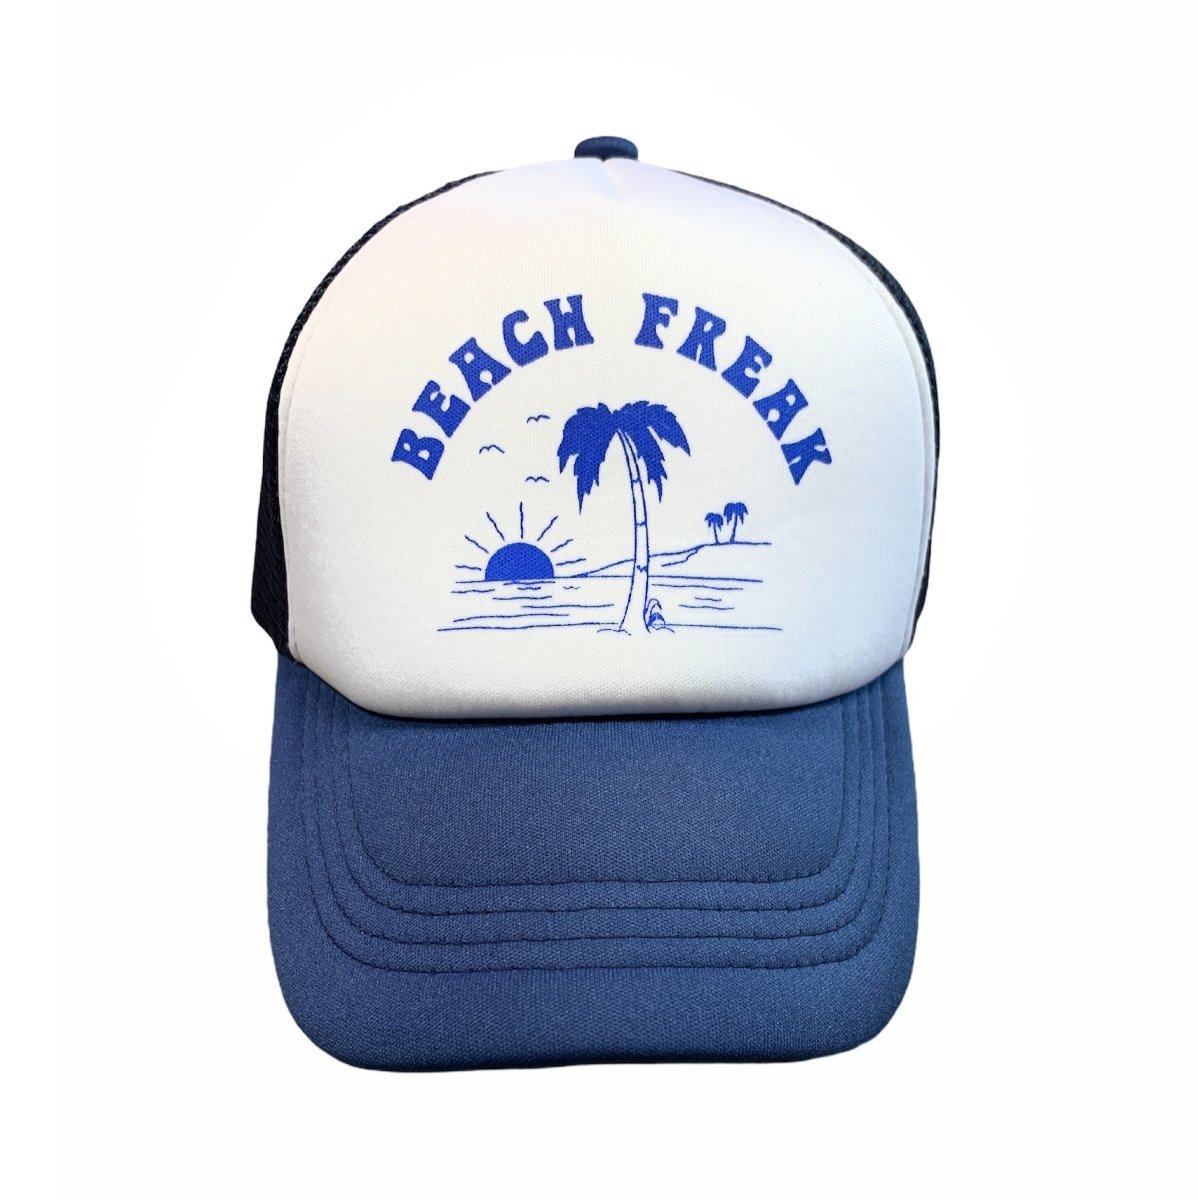 BEACH FREEK HAT - HATS